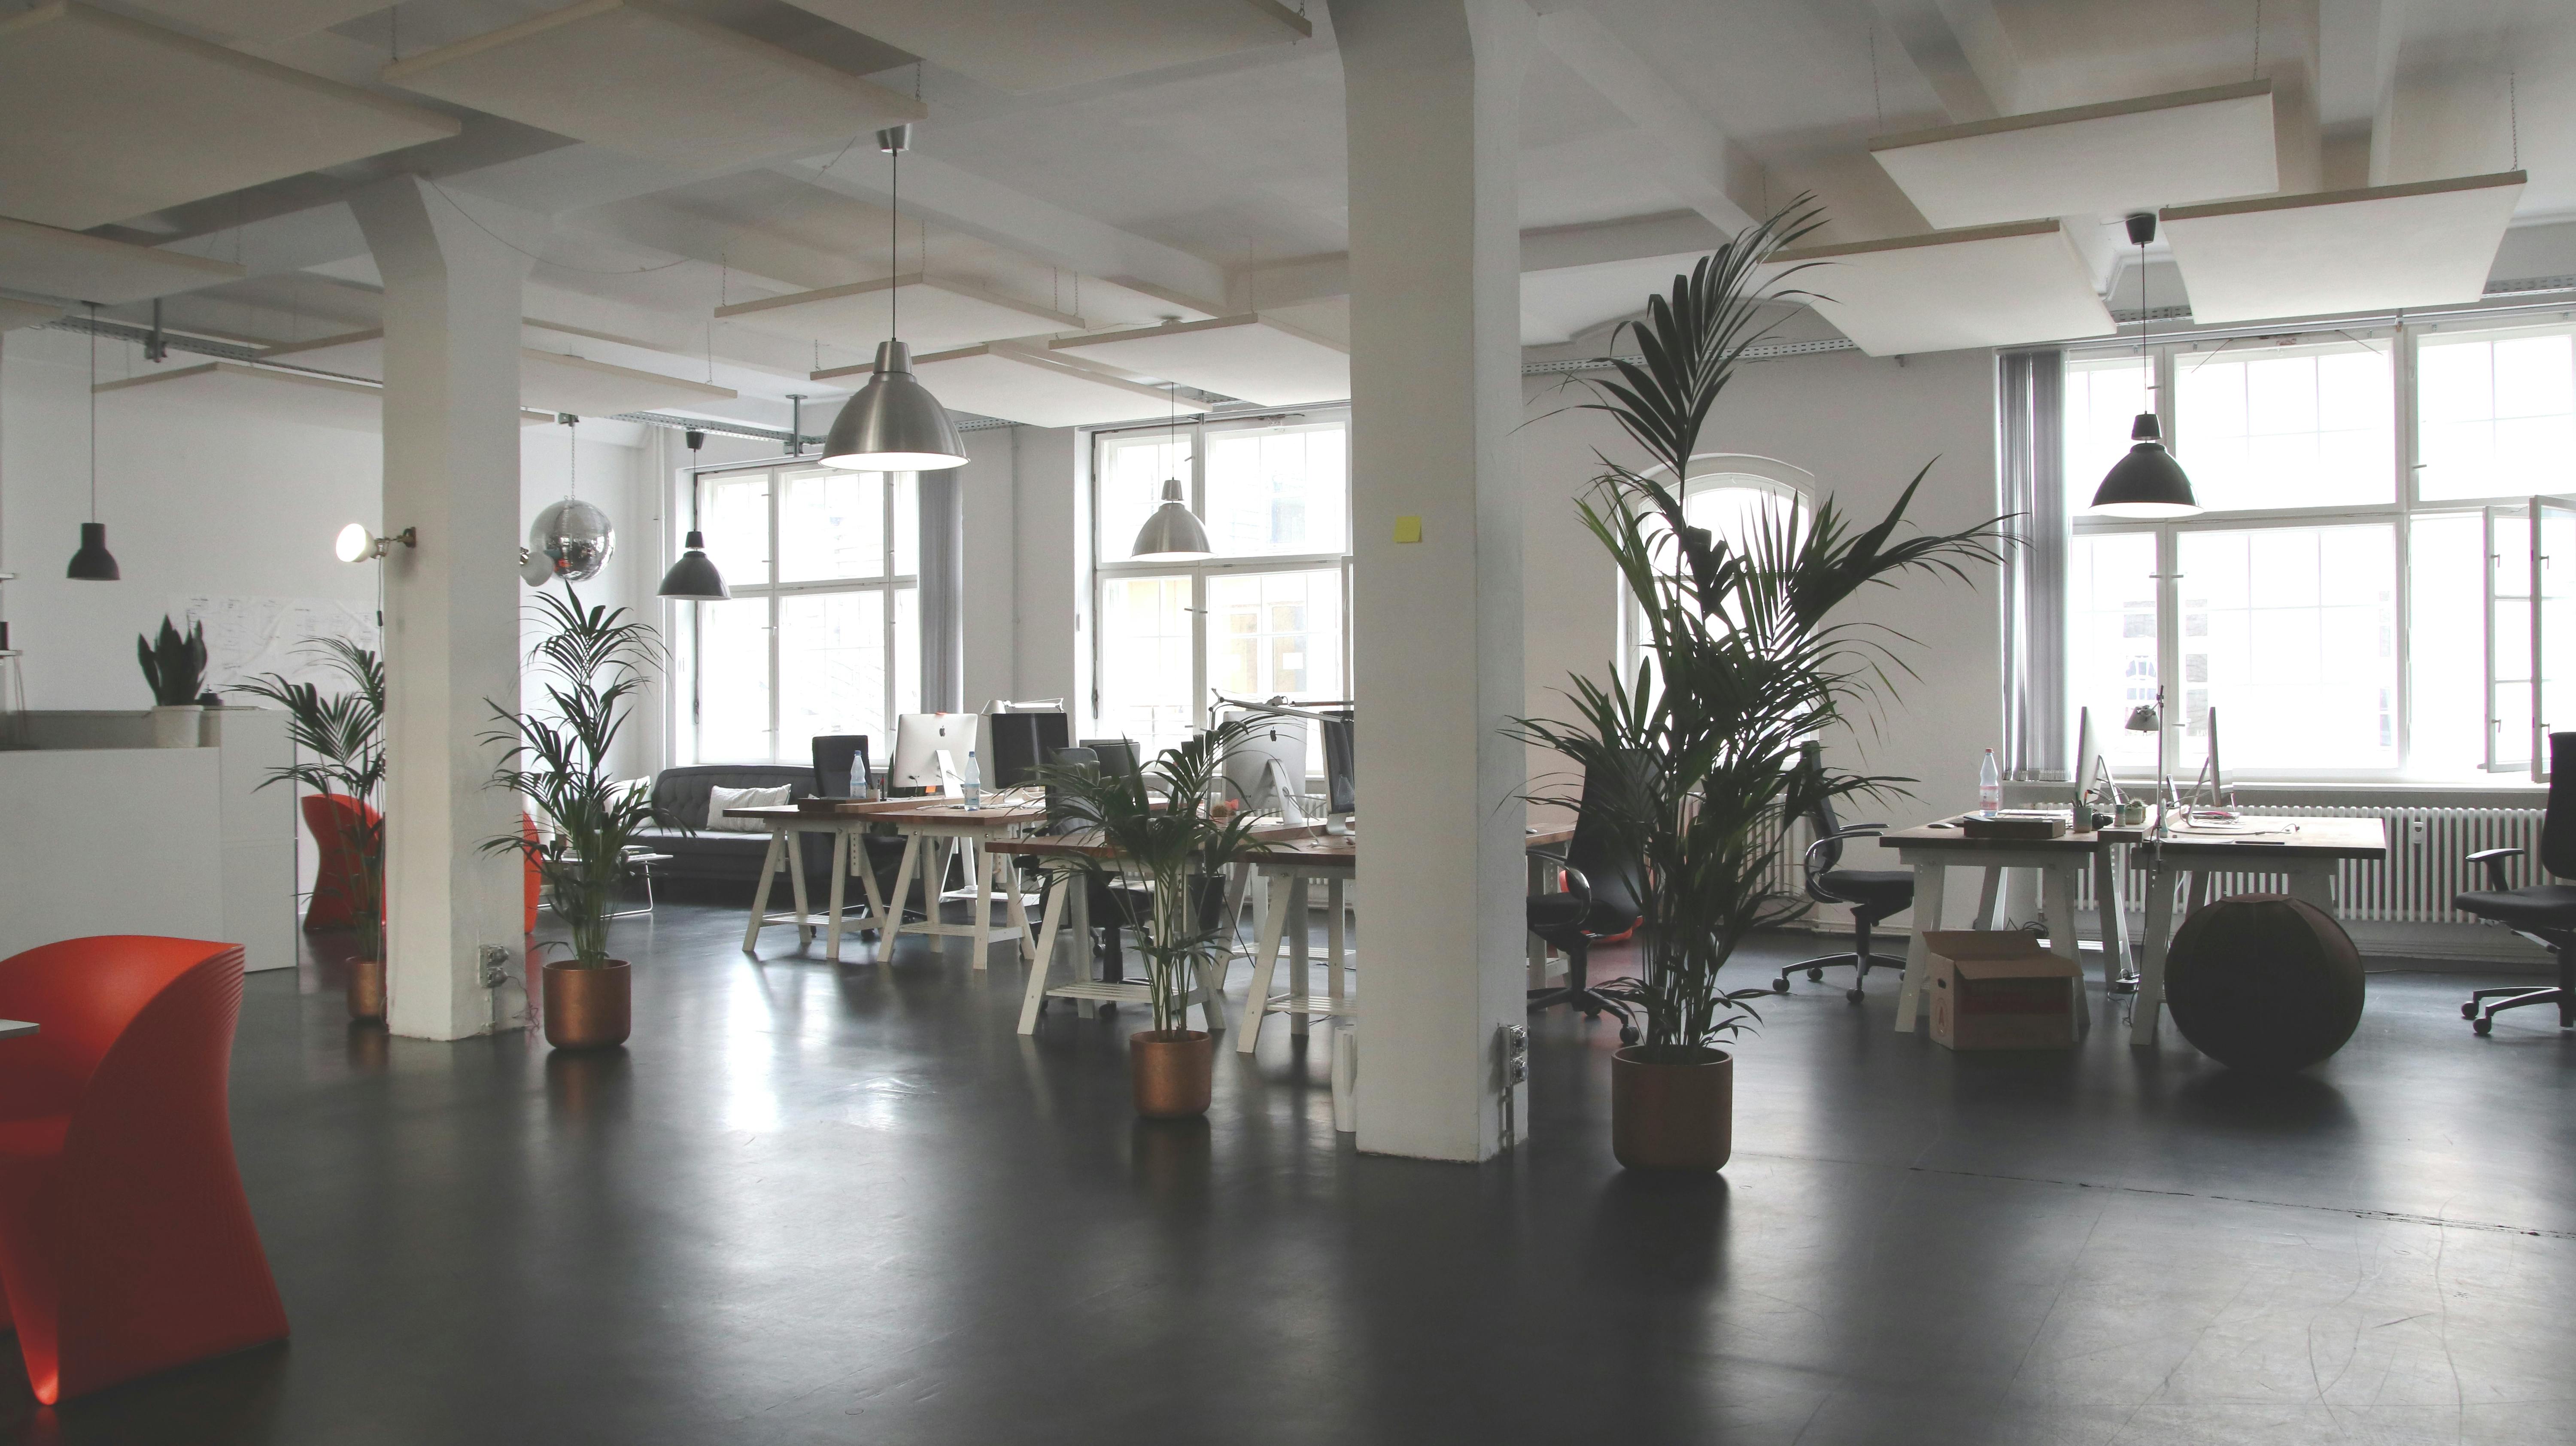 Bạn đang muốn tìm kiếm hình nền văn phòng độc đáo và miễn phí? Hãy tải xuống ngay hình nền văn phòng rất đẹp này để tìm được sự ấm cúng cho không gian làm việc của bạn.